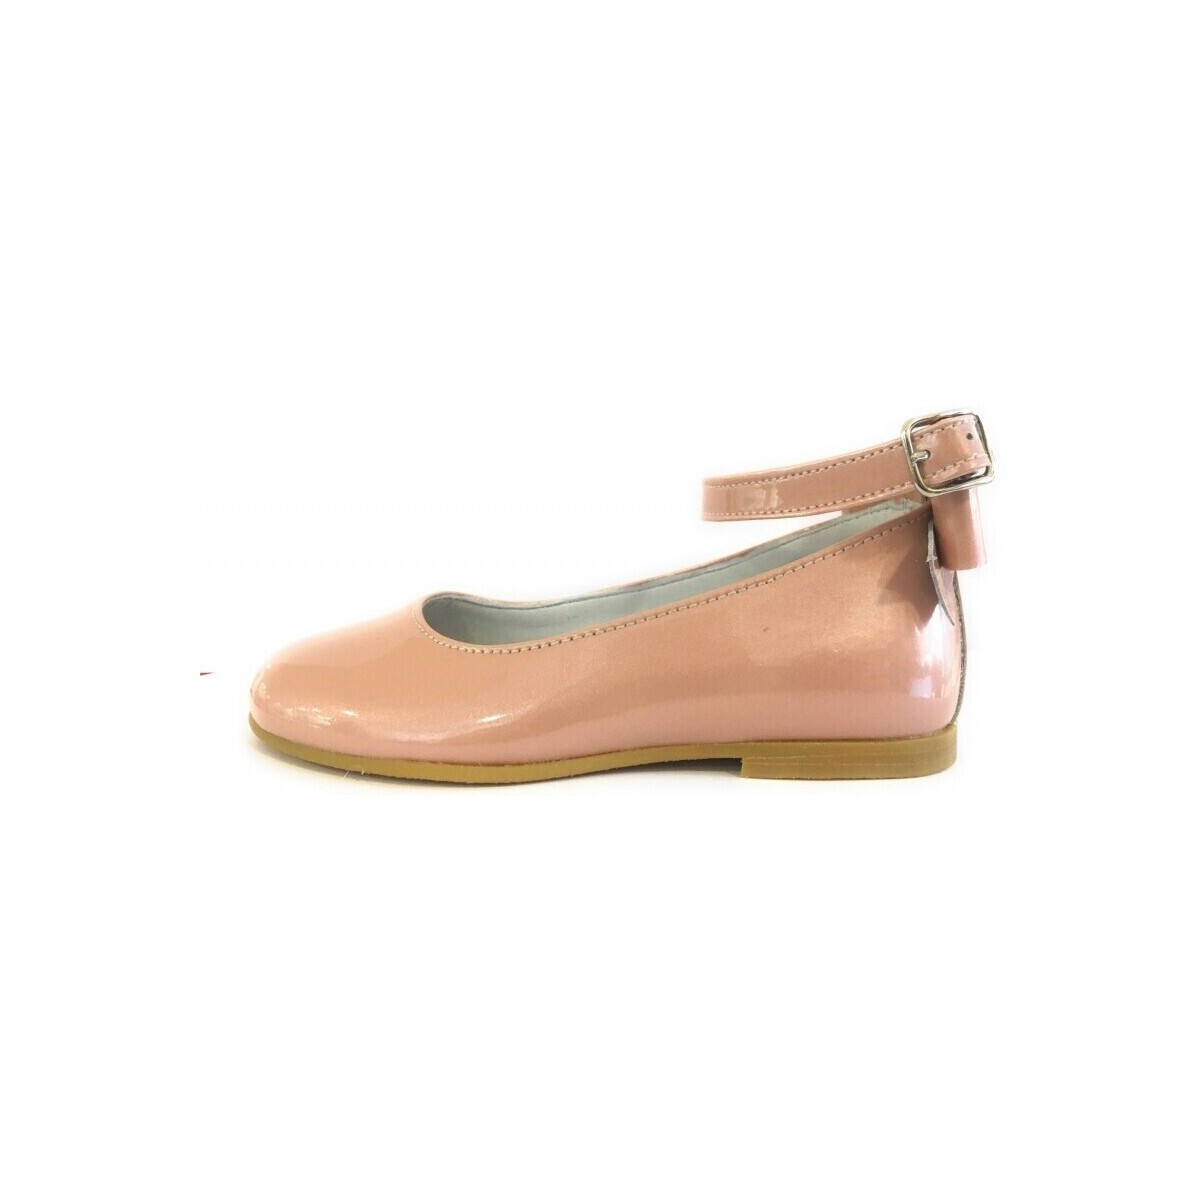 Παπούτσια Κορίτσι Μπαλαρίνες Gulliver 25201-18 Ροζ